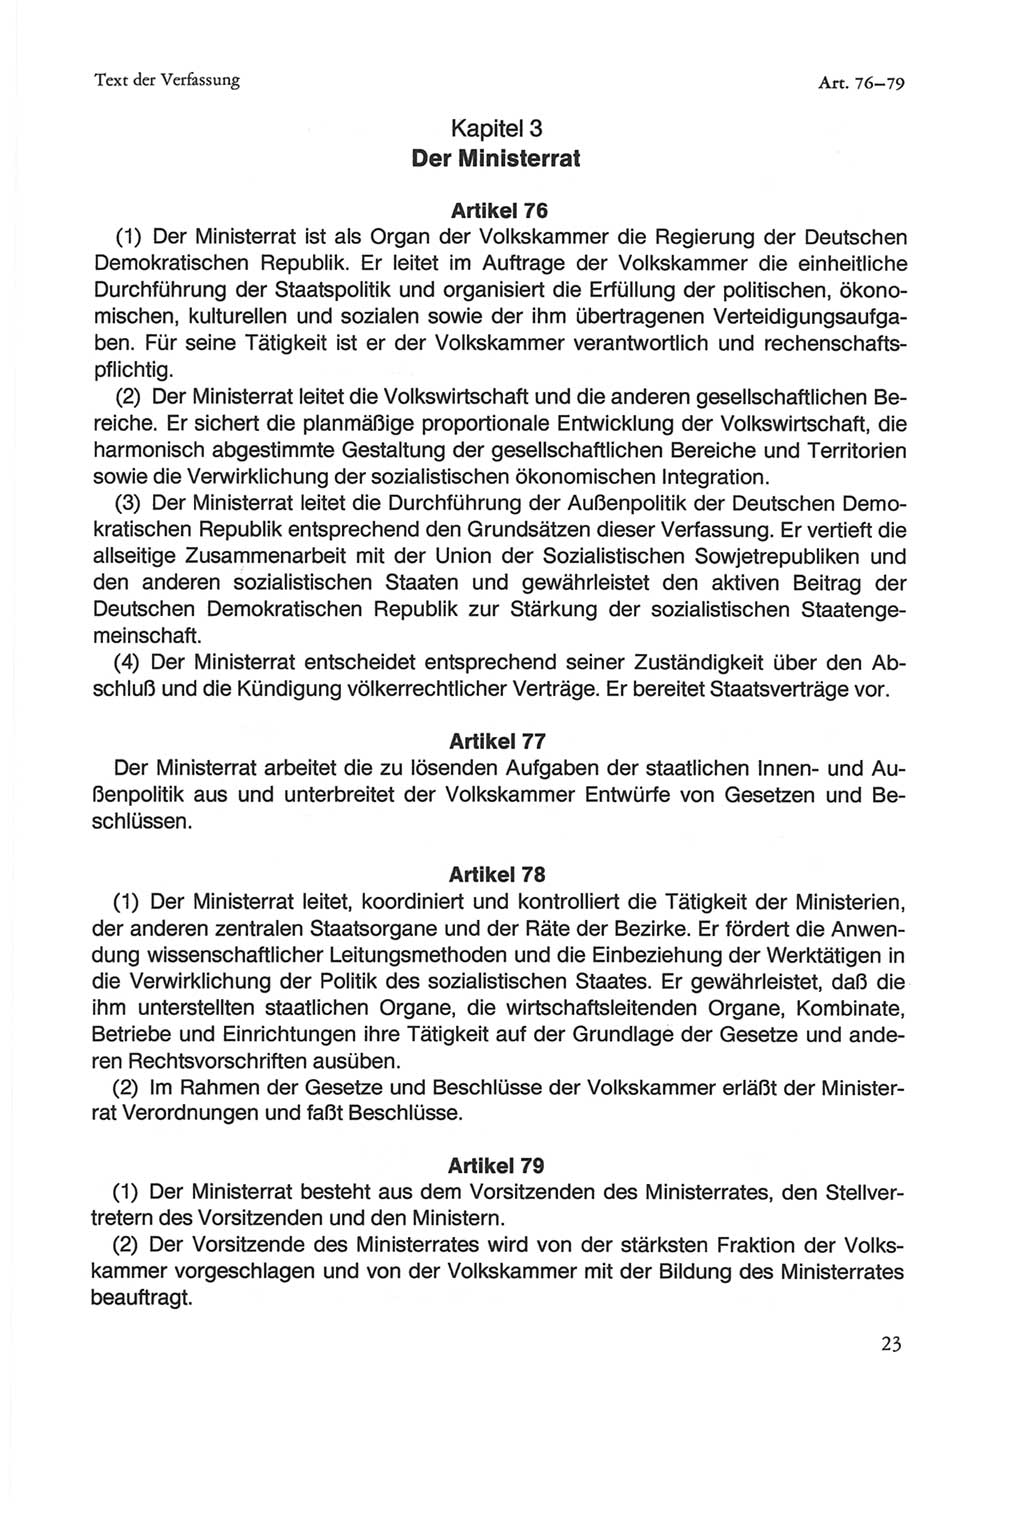 Die sozialistische Verfassung der Deutschen Demokratischen Republik (DDR), Kommentar mit einem Nachtrag 1997, Seite 23 (Soz. Verf. DDR Komm. Nachtr. 1997, S. 23)